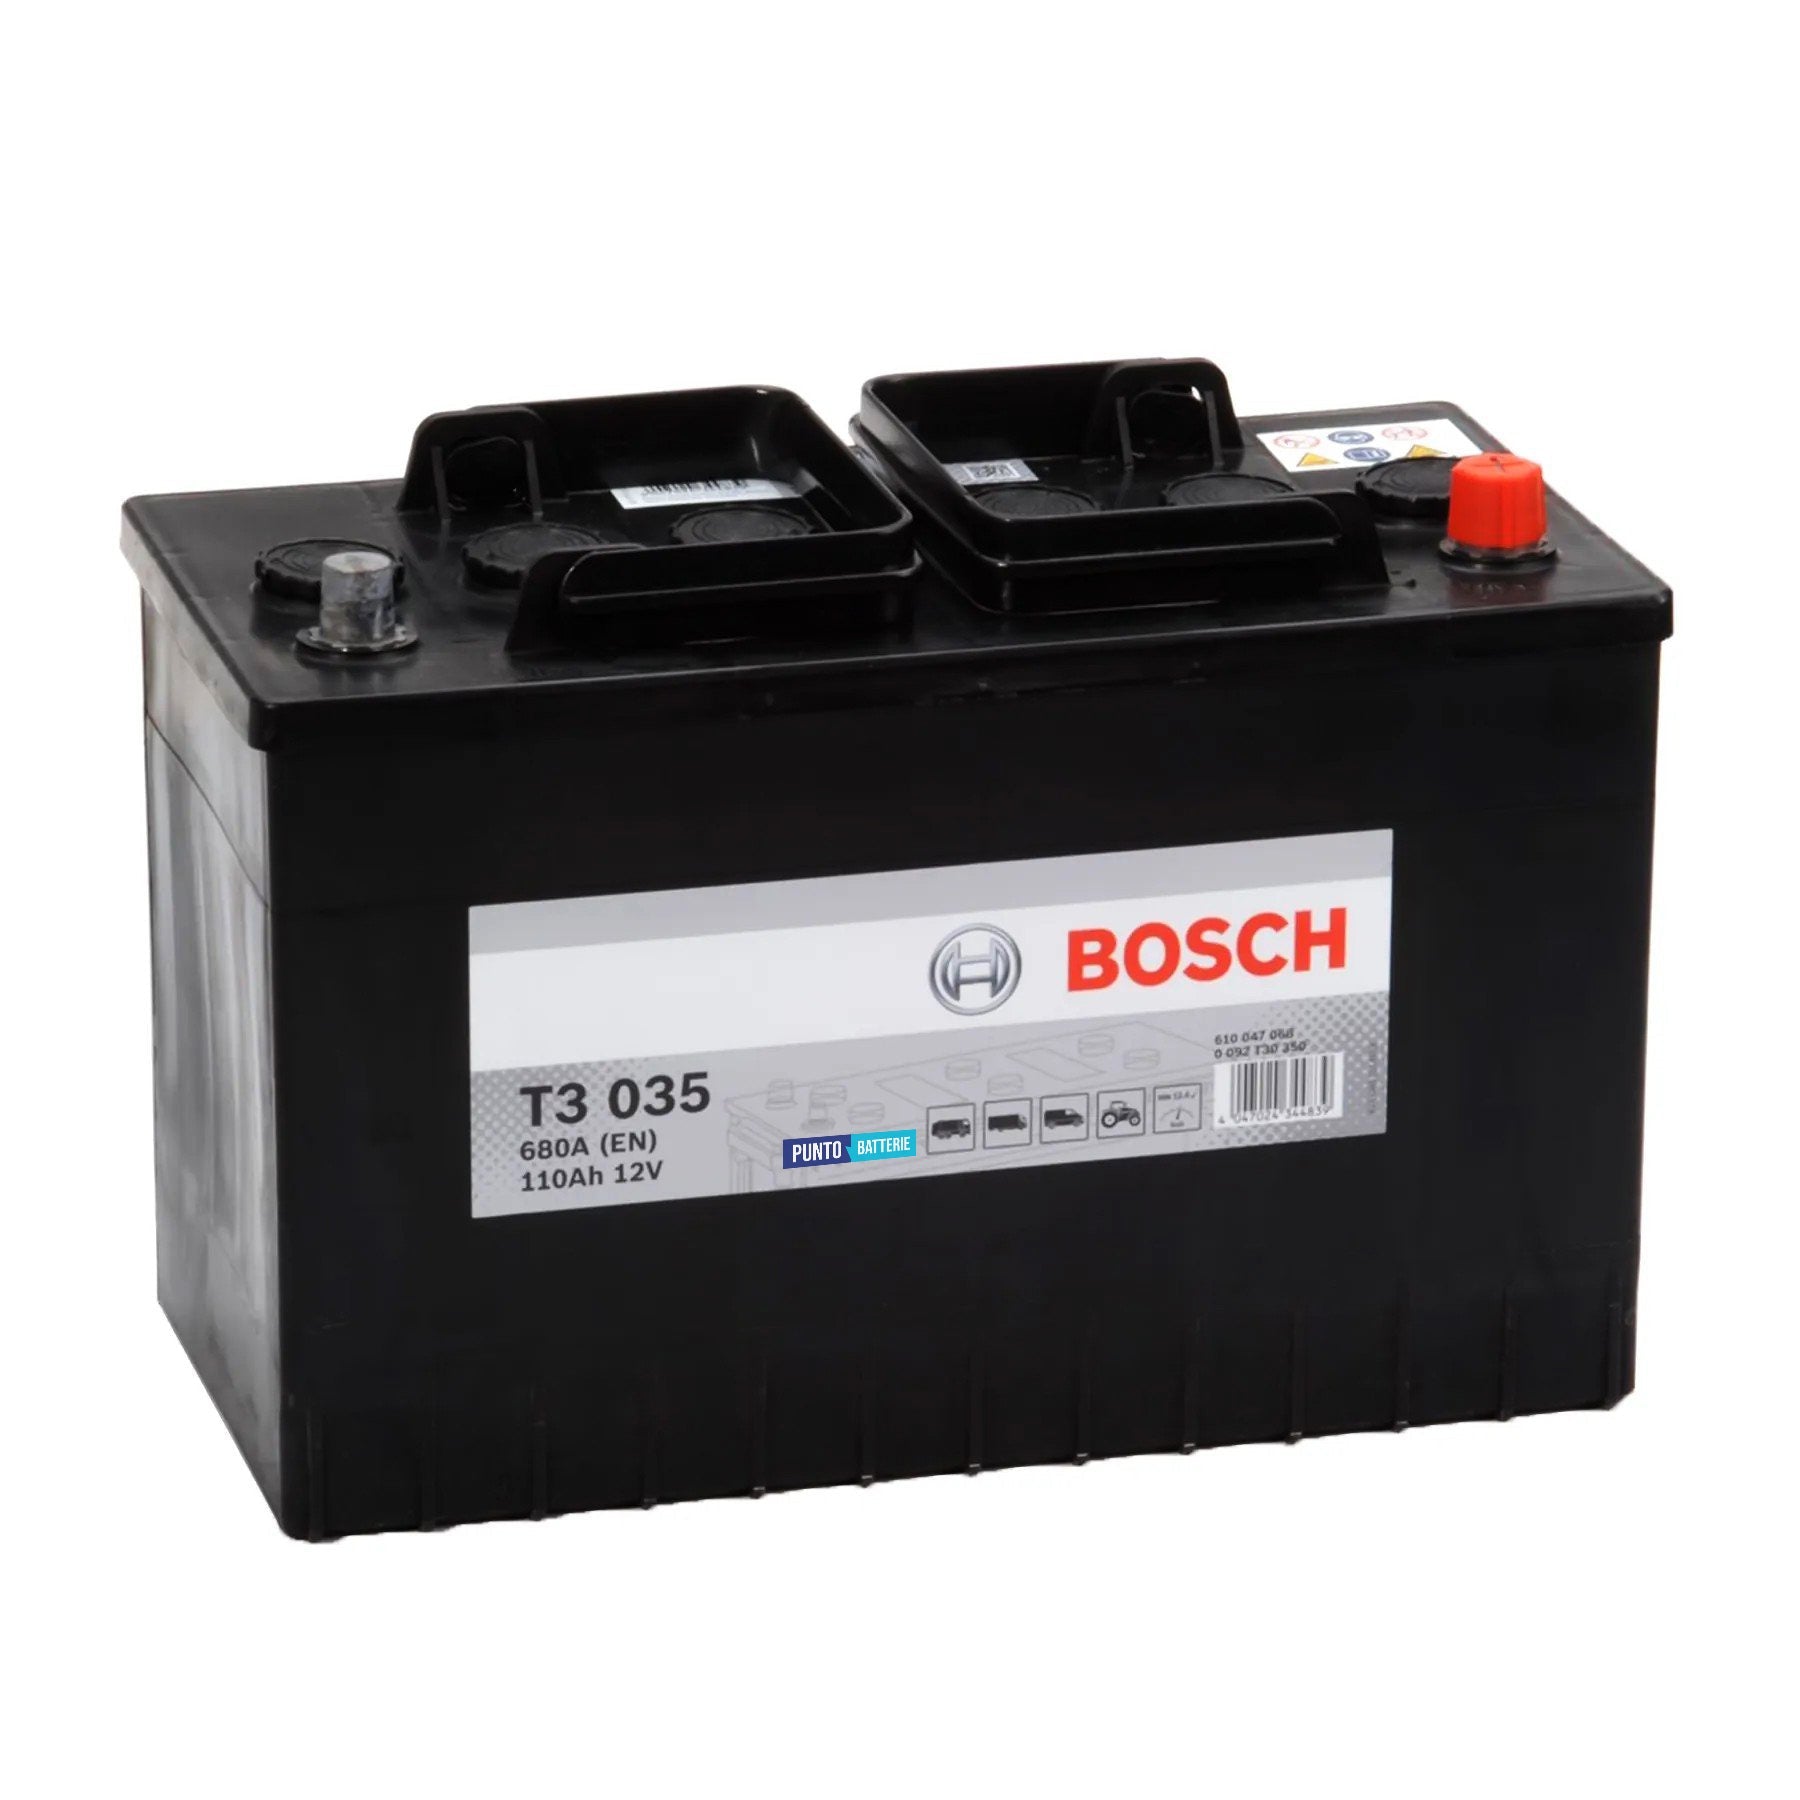 Batteria originale Bosch T3 T3035, dimensioni 346 x 173 x 236, polo positivo a destra, 12 volt, 110 amperora, 680 ampere. Batteria per camion e veicoli pesanti.